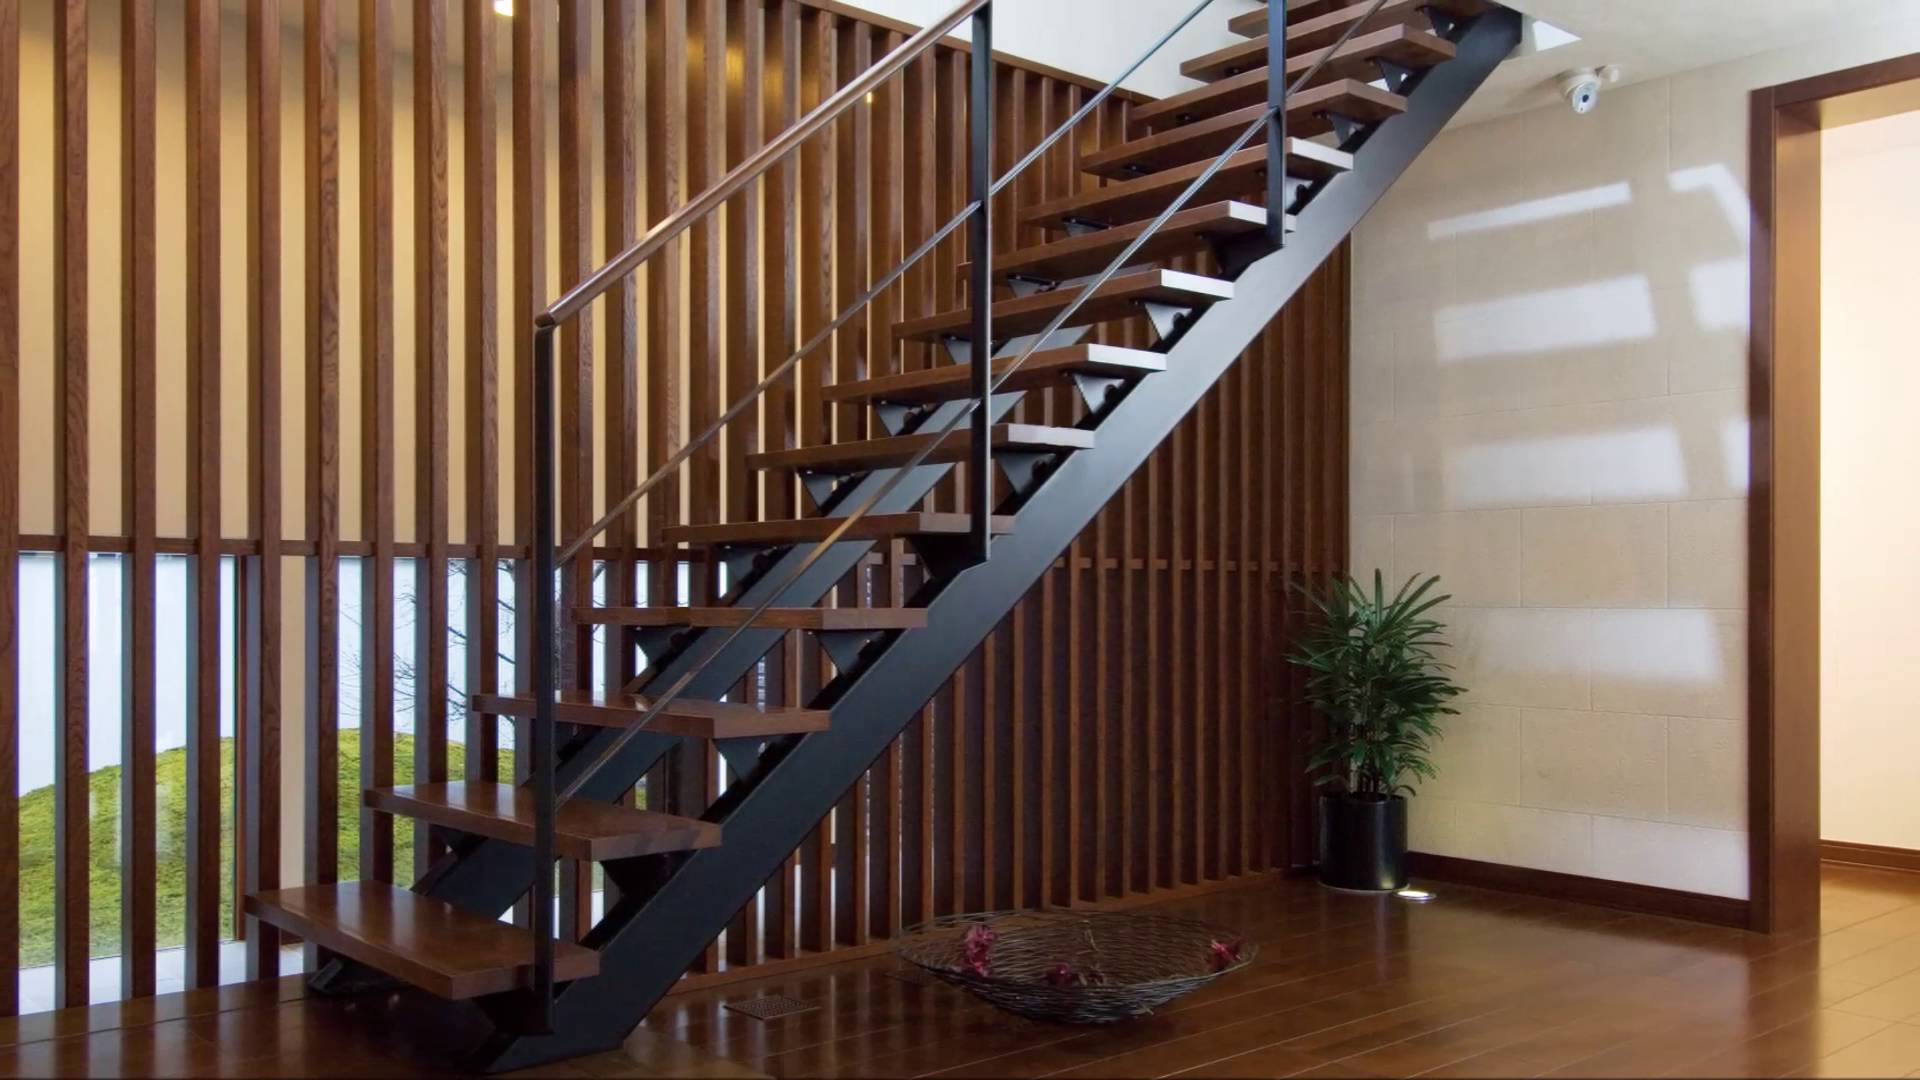 Xâ nhà sửa chữa nhà nên chọn cầu thang gỗ hay cầu thang sắt